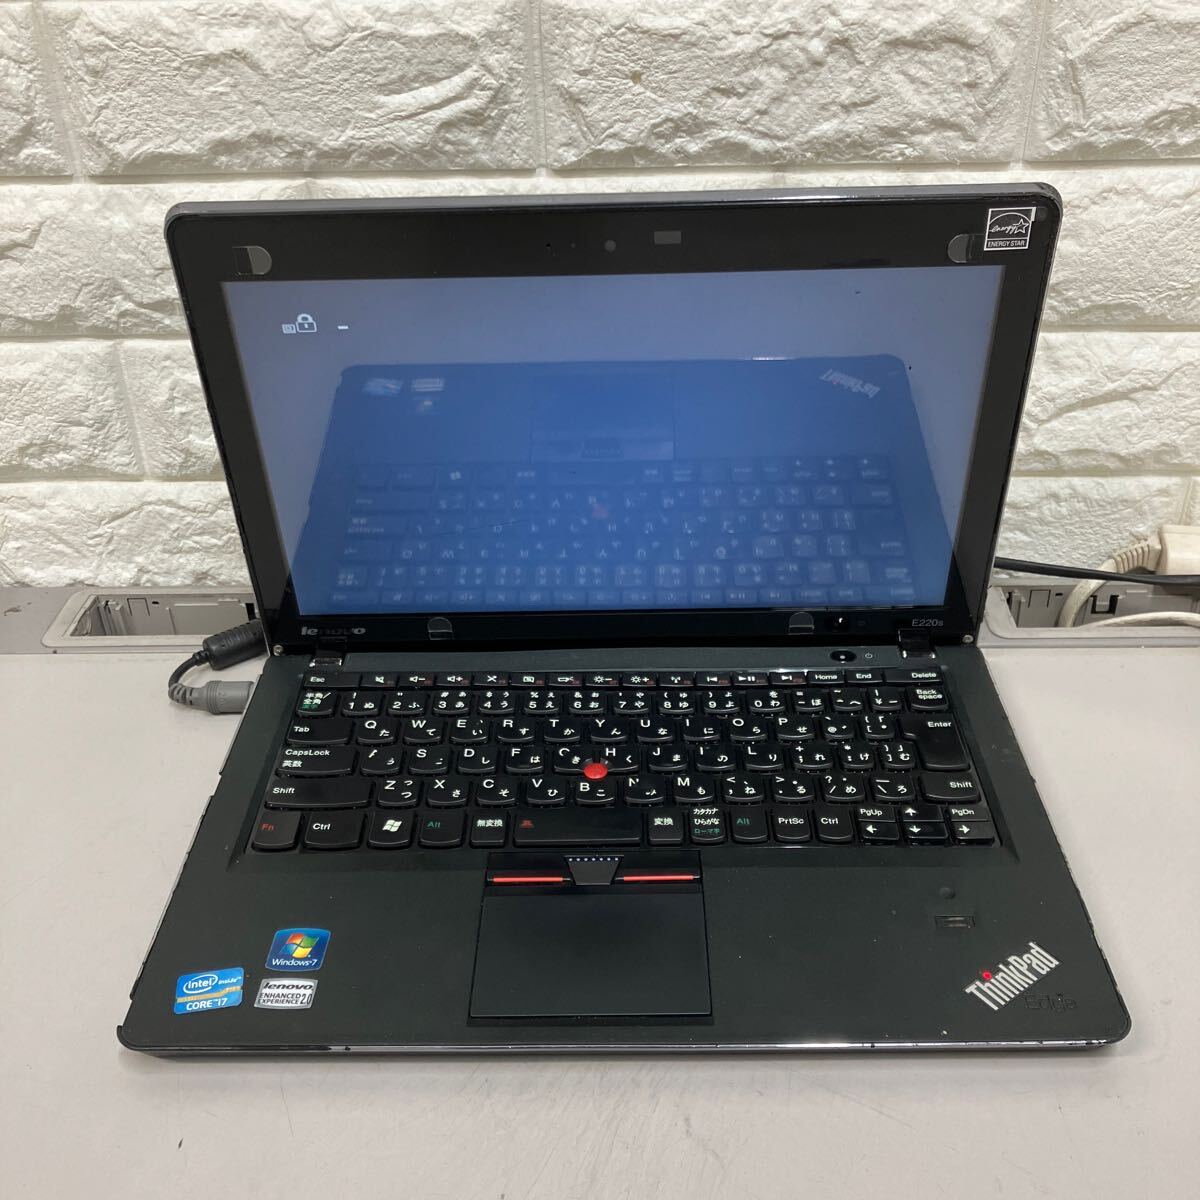 G151 Lenovo ThinkPad E220S Core i7 no. 2 generation memory 4GB Junk 